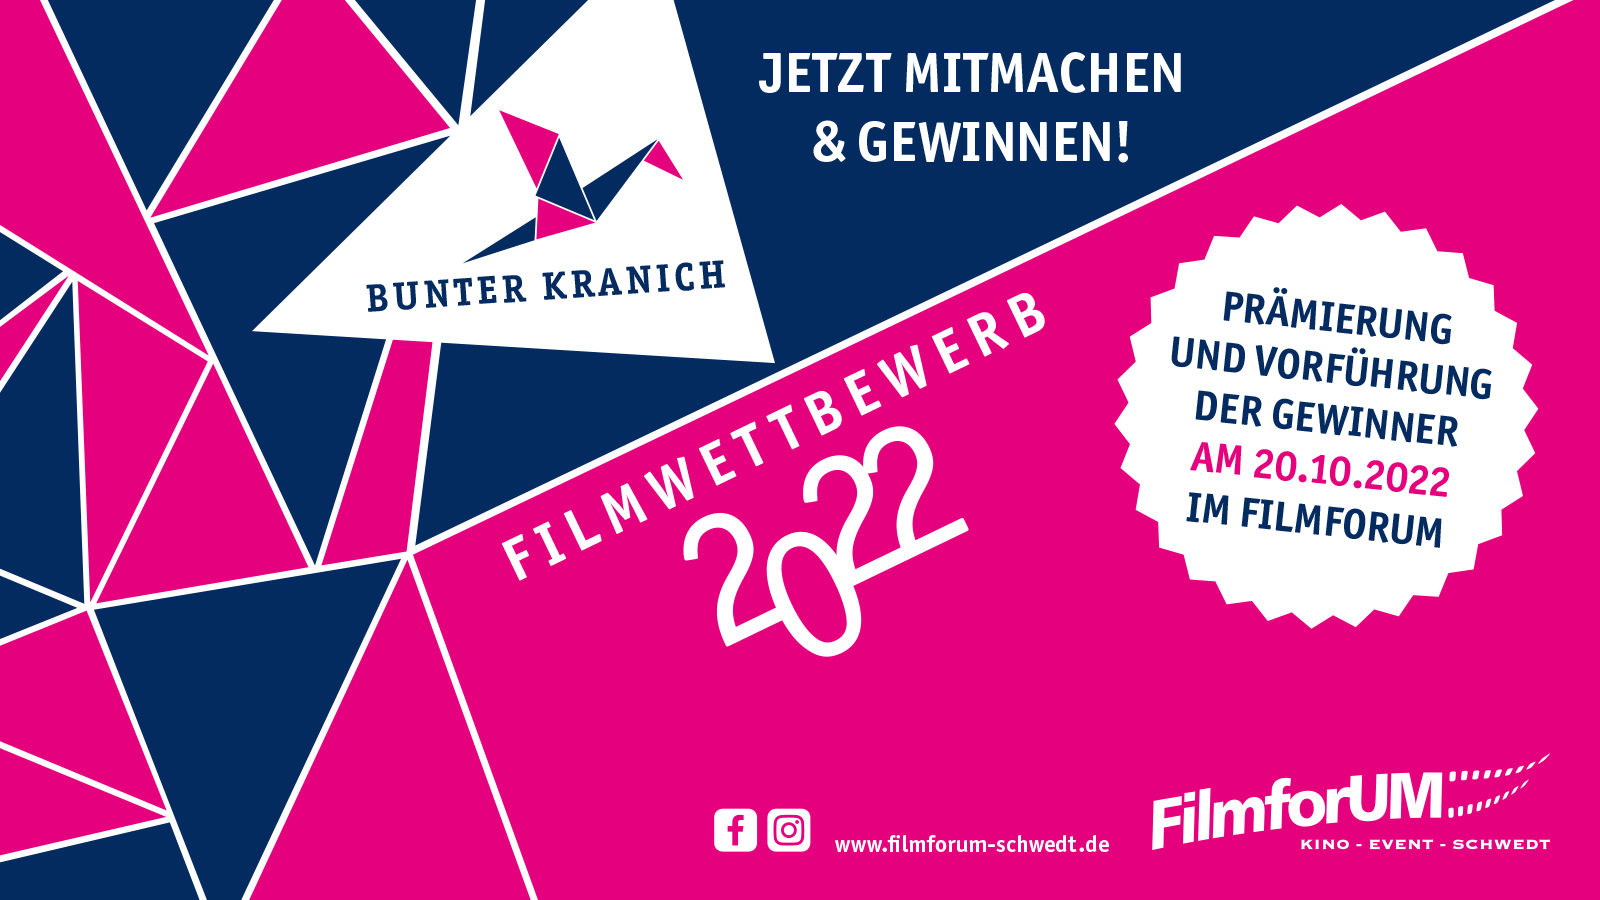 Bunter Kranich - Filmwettbewerb für die Generation Z